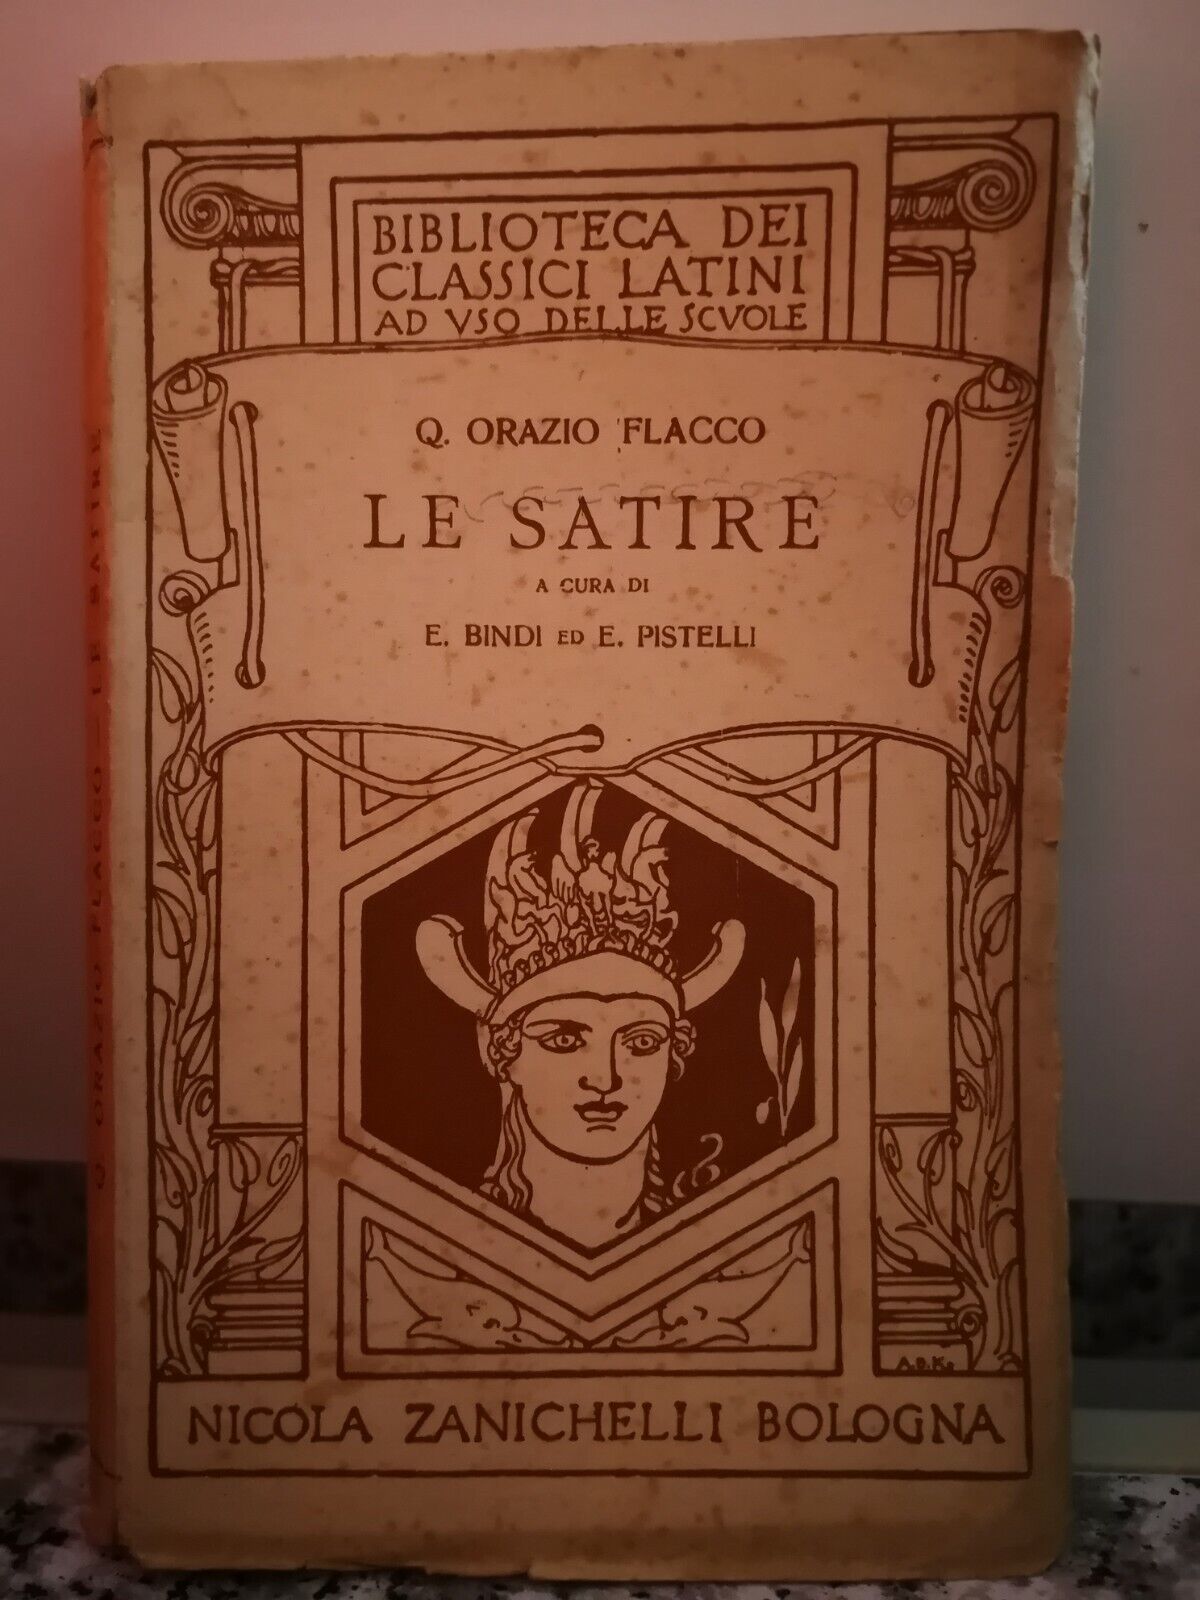  Le Satire 15?ed ( quinto Orazio flacco)  di Enrico Bindi,  1946,  Zanichelli-F